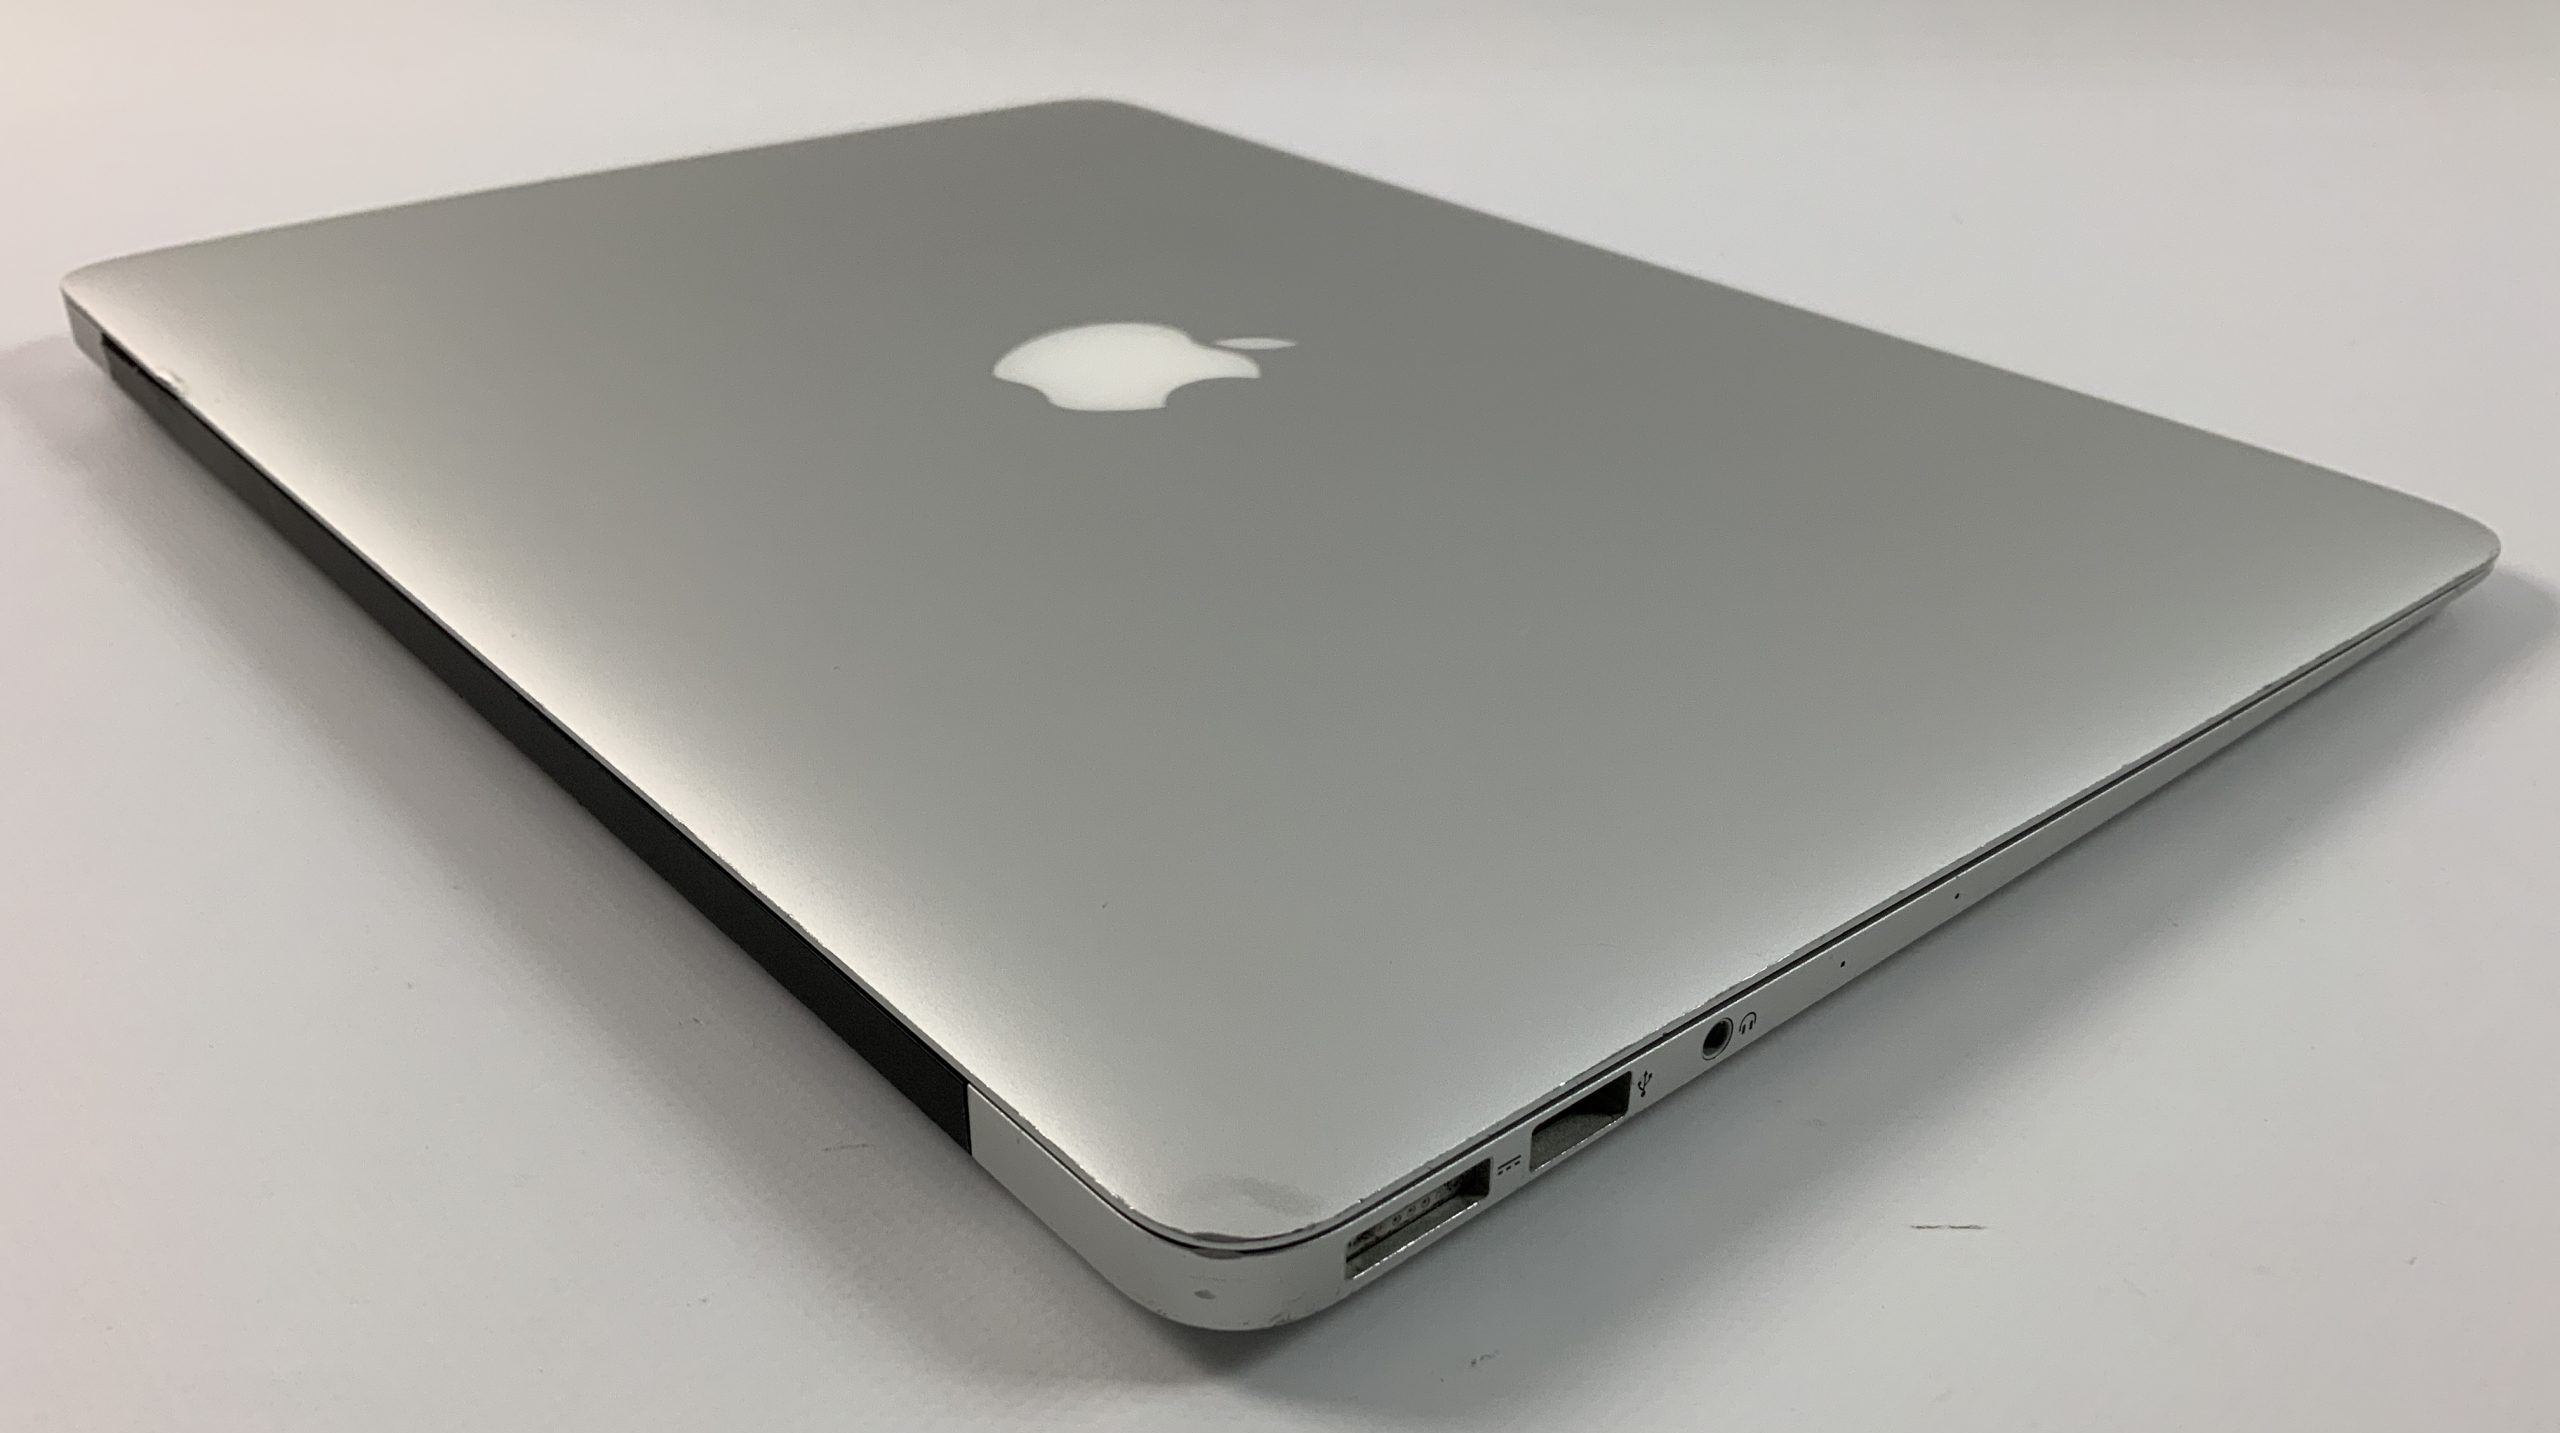 MacBook Air 13" Mid 2017 (Intel Core i5 1.8 GHz 8 GB RAM 256 GB SSD), Intel Core i5 1.8 GHz, 8 GB RAM, 256 GB SSD, image 5